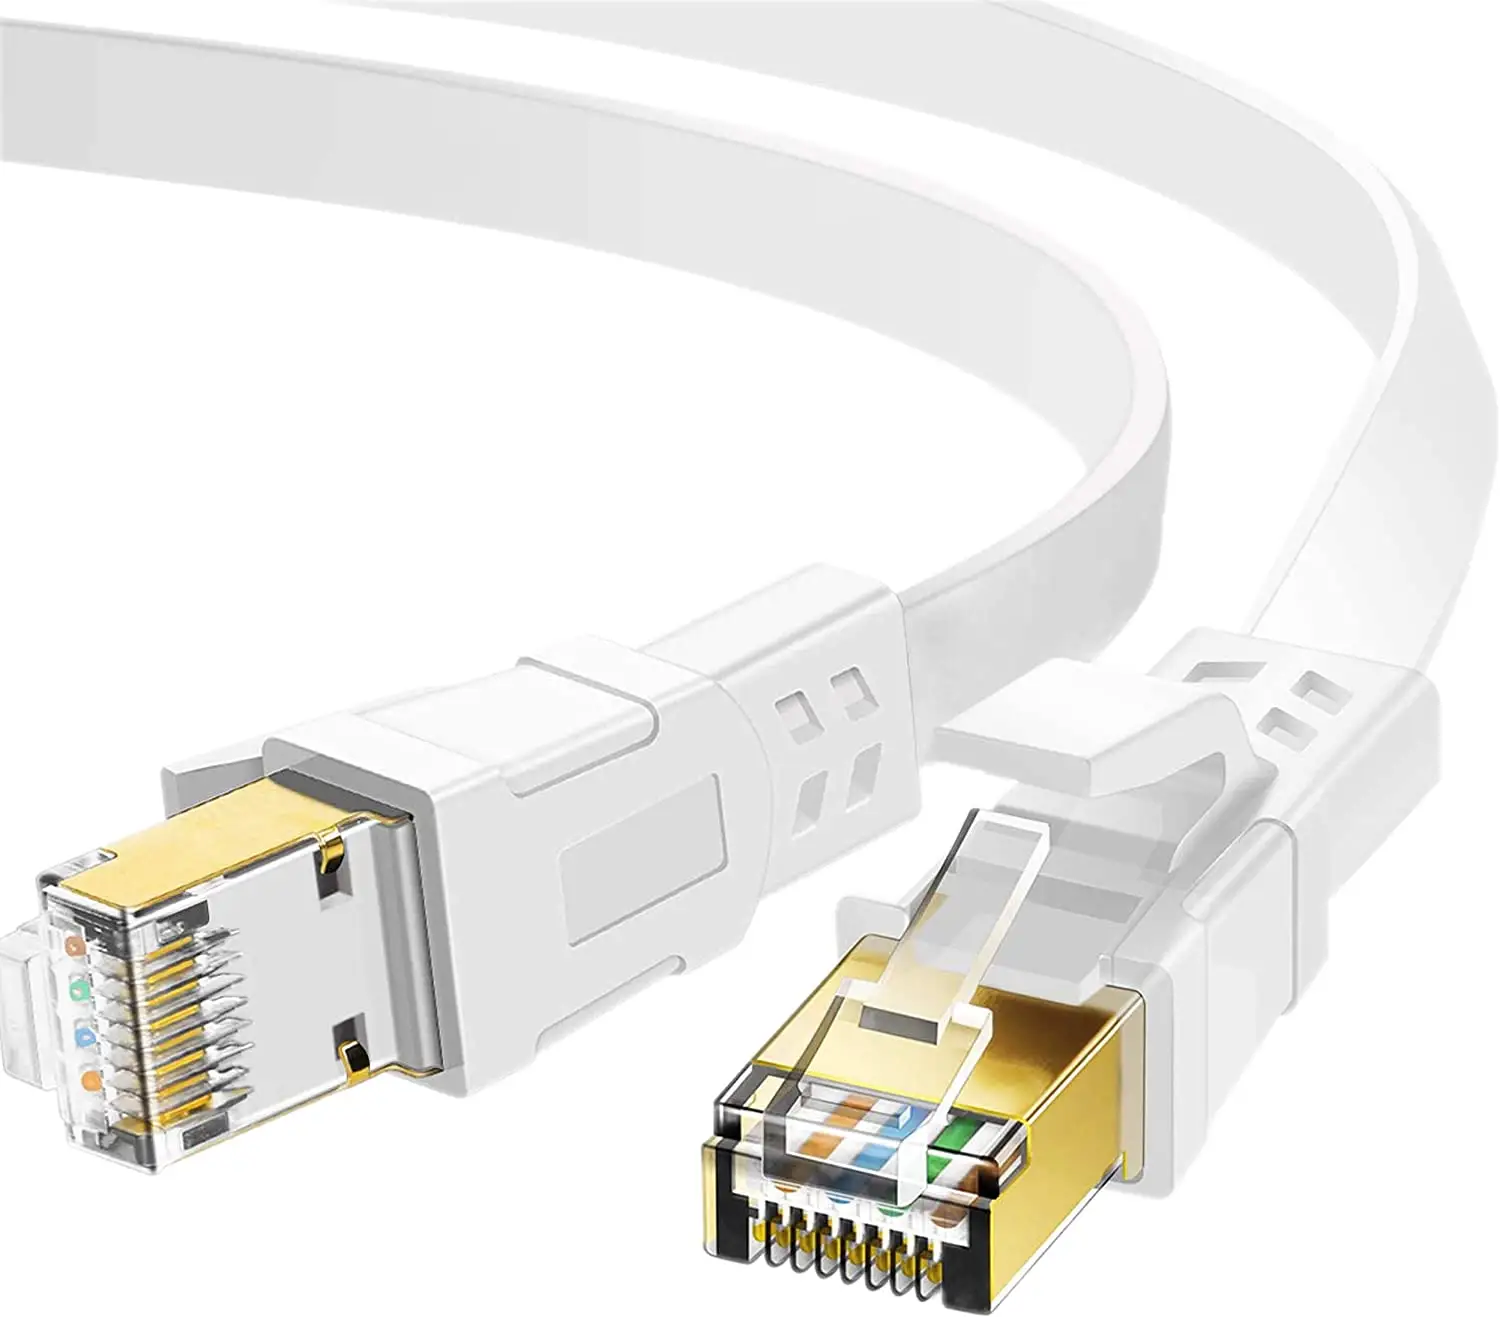 Сетевой кабель CAT 8 RJ45 Ethernet Lan с покрытием, новый золотой кабель для наружного использования, ПВХ, плоский кабель Cat 8